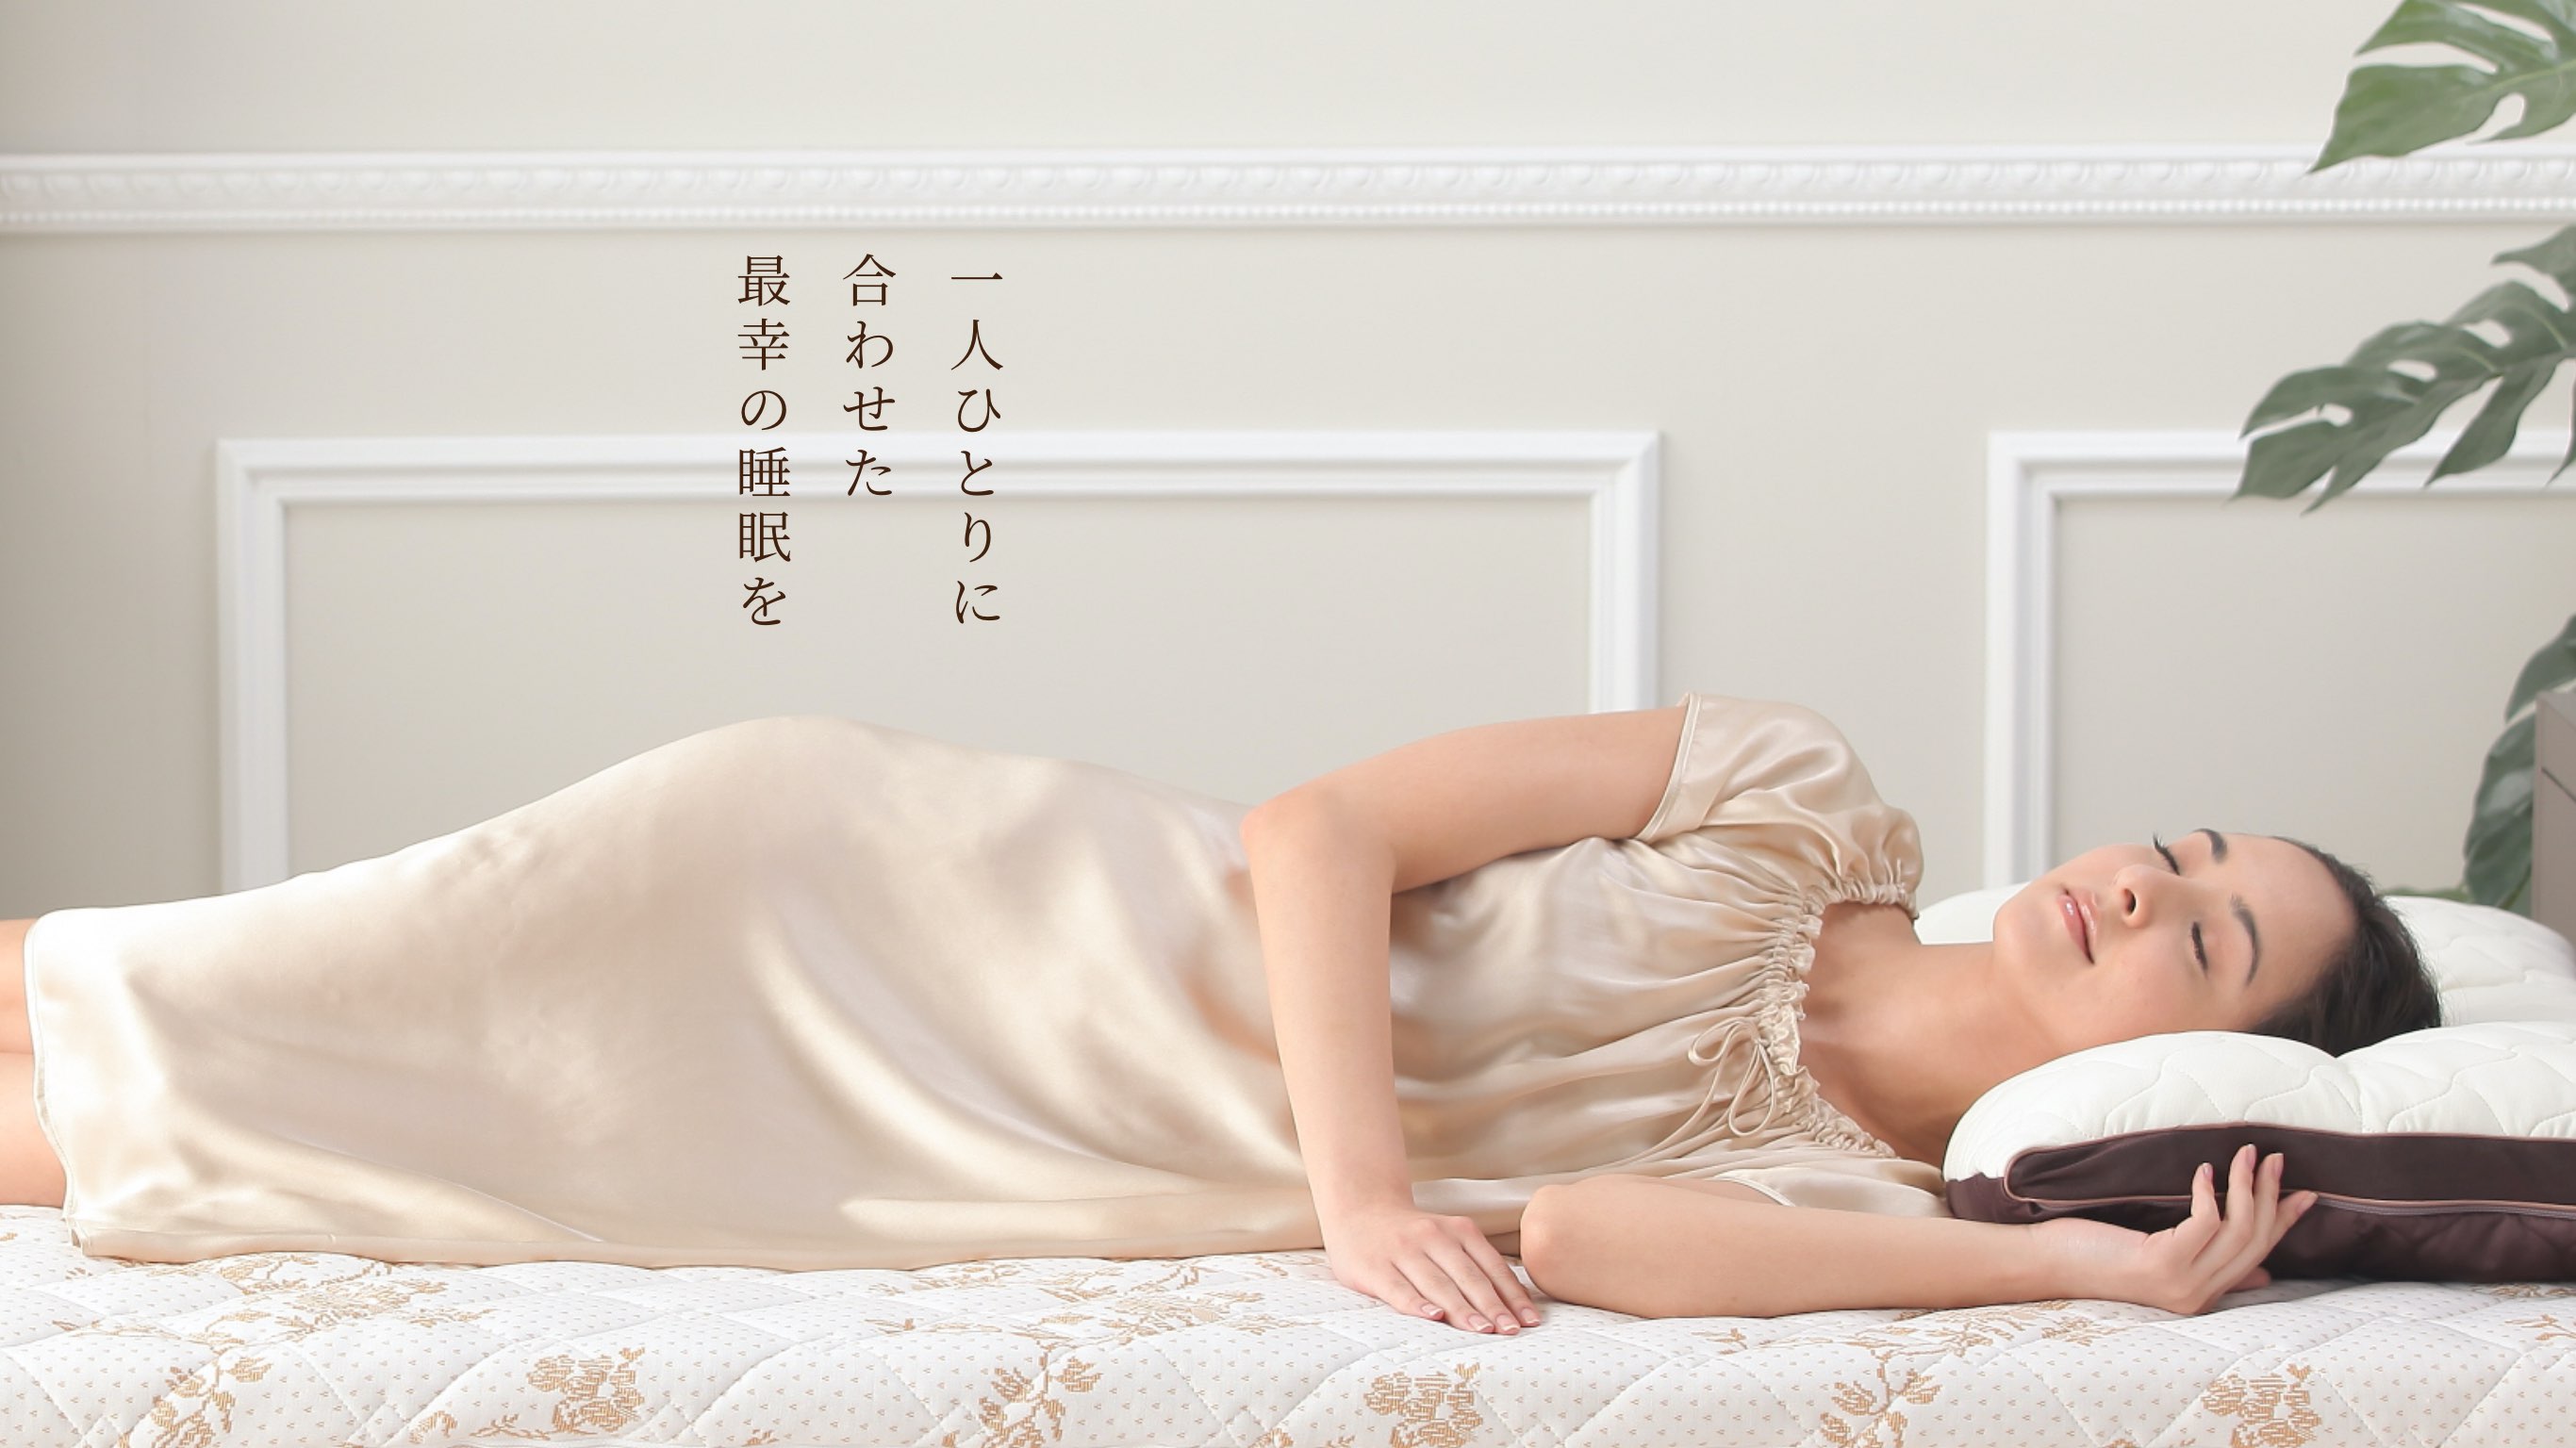 オーダーメイド枕「じぶんまくら」で最幸の眠りを｜じぶんまくら公式サイト